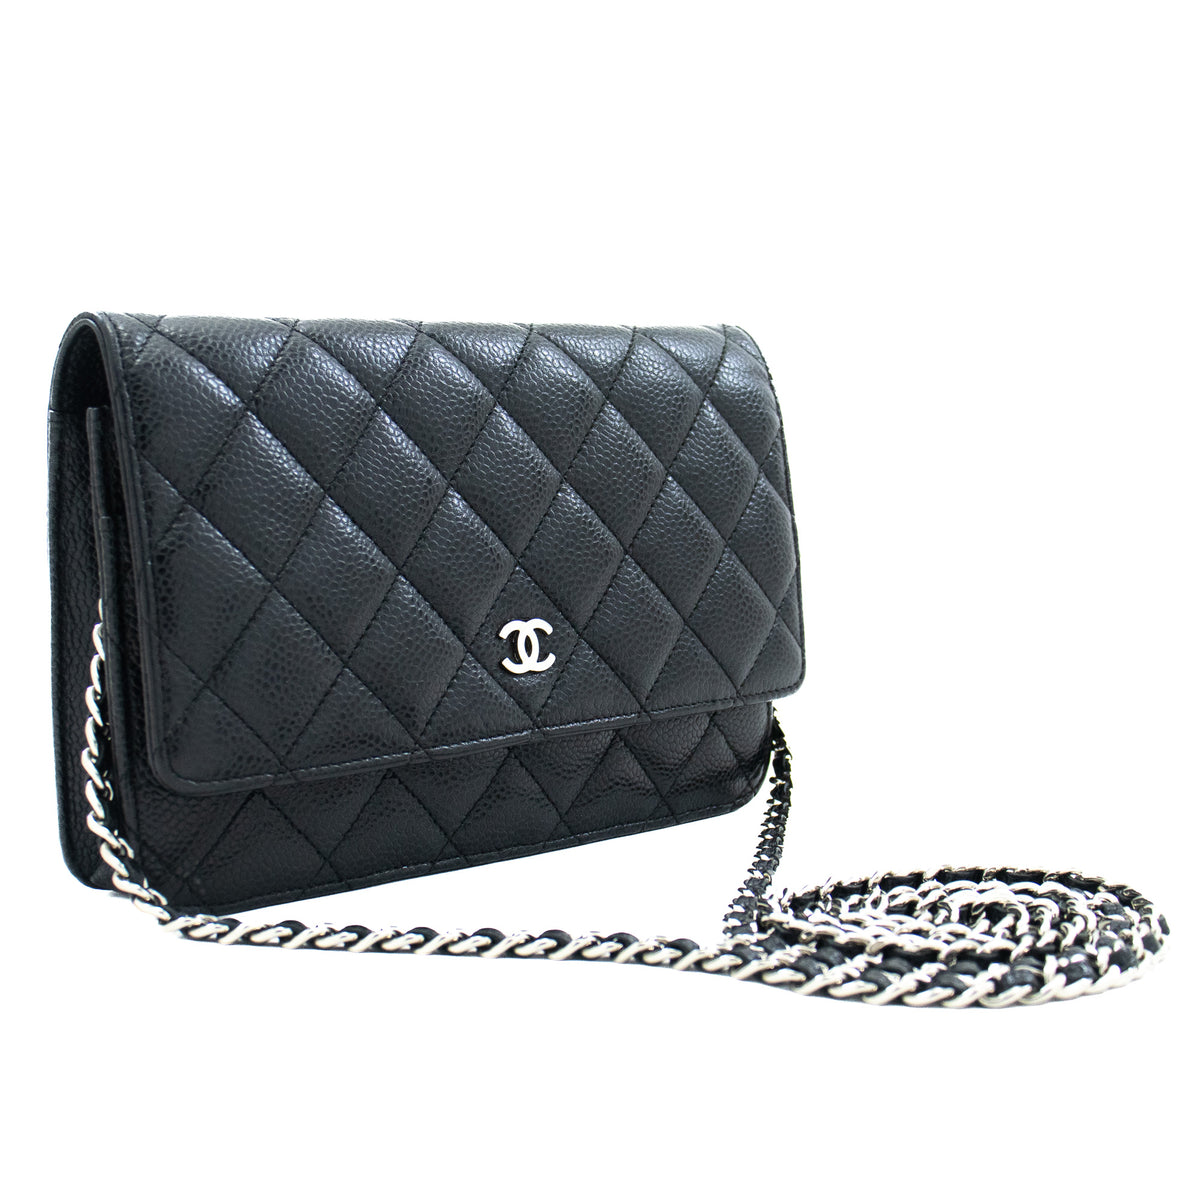 chanel bag black crossbody handbag